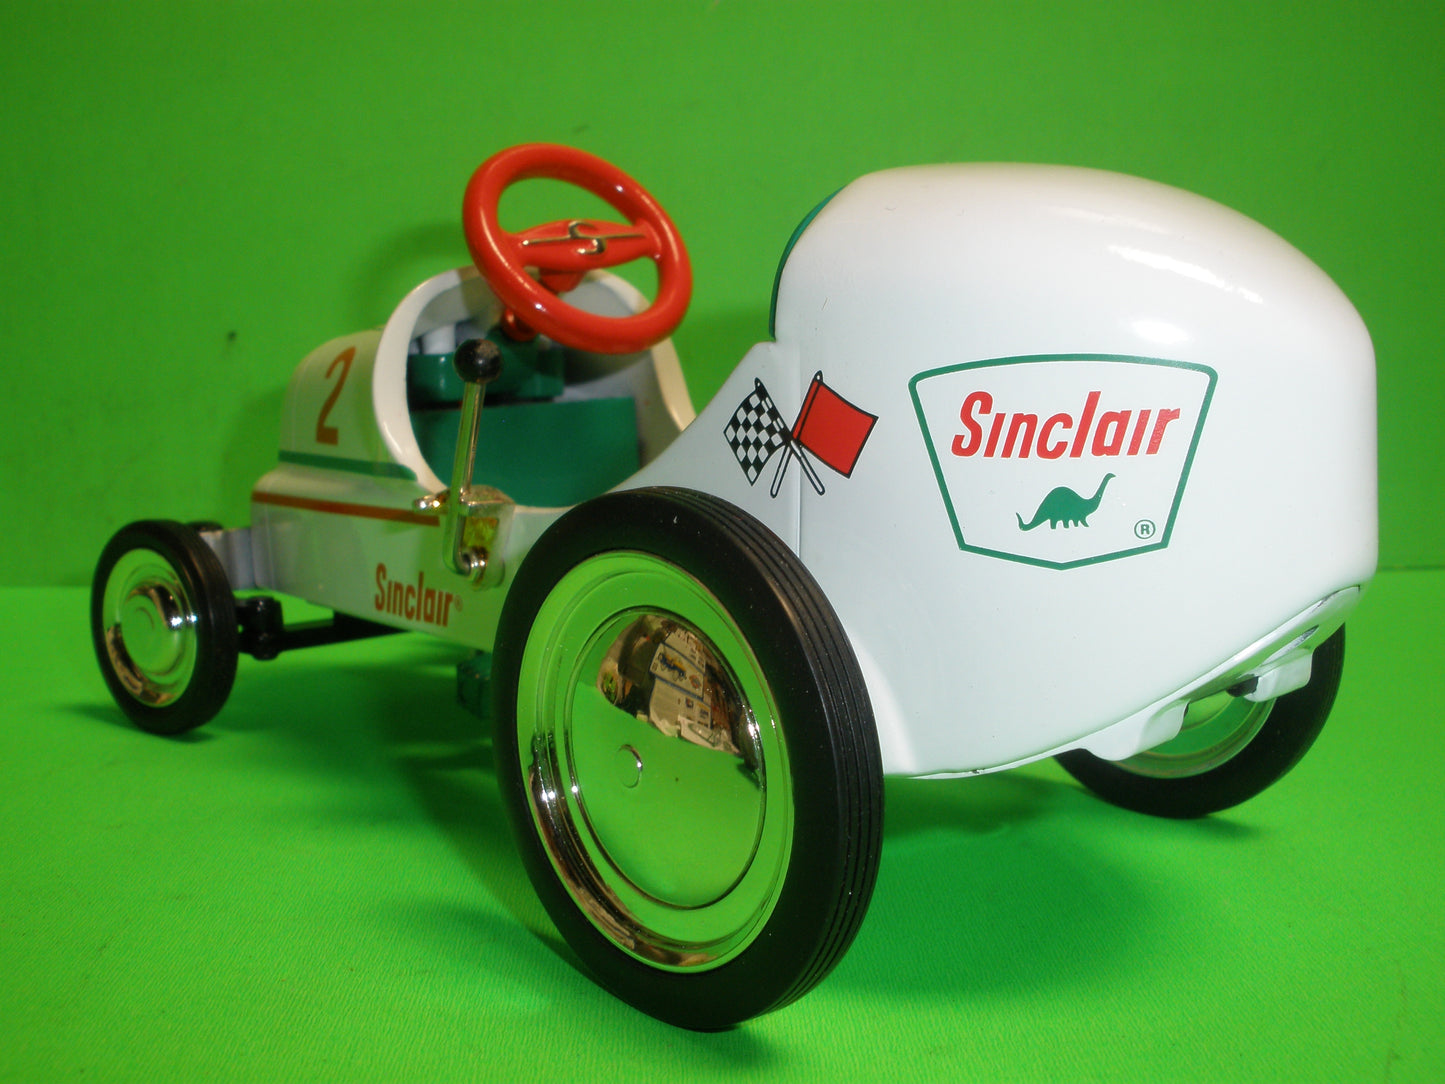 #2 - Sinclair 1947 BMC Pedal Car Racer